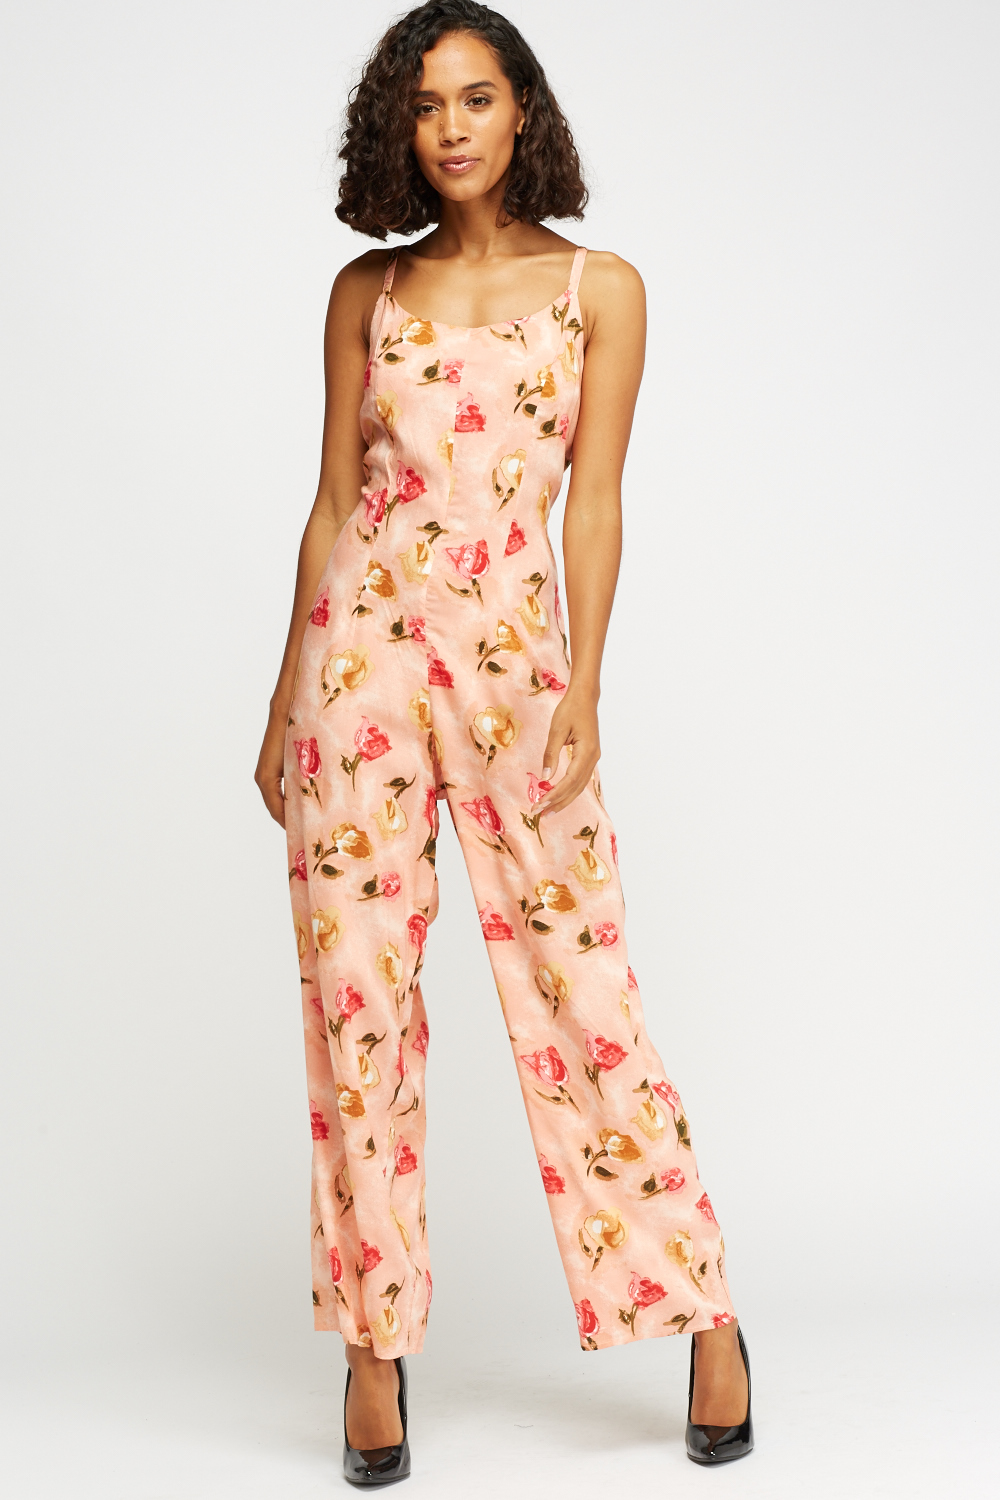 Floral Print Jumpsuit - Just $7